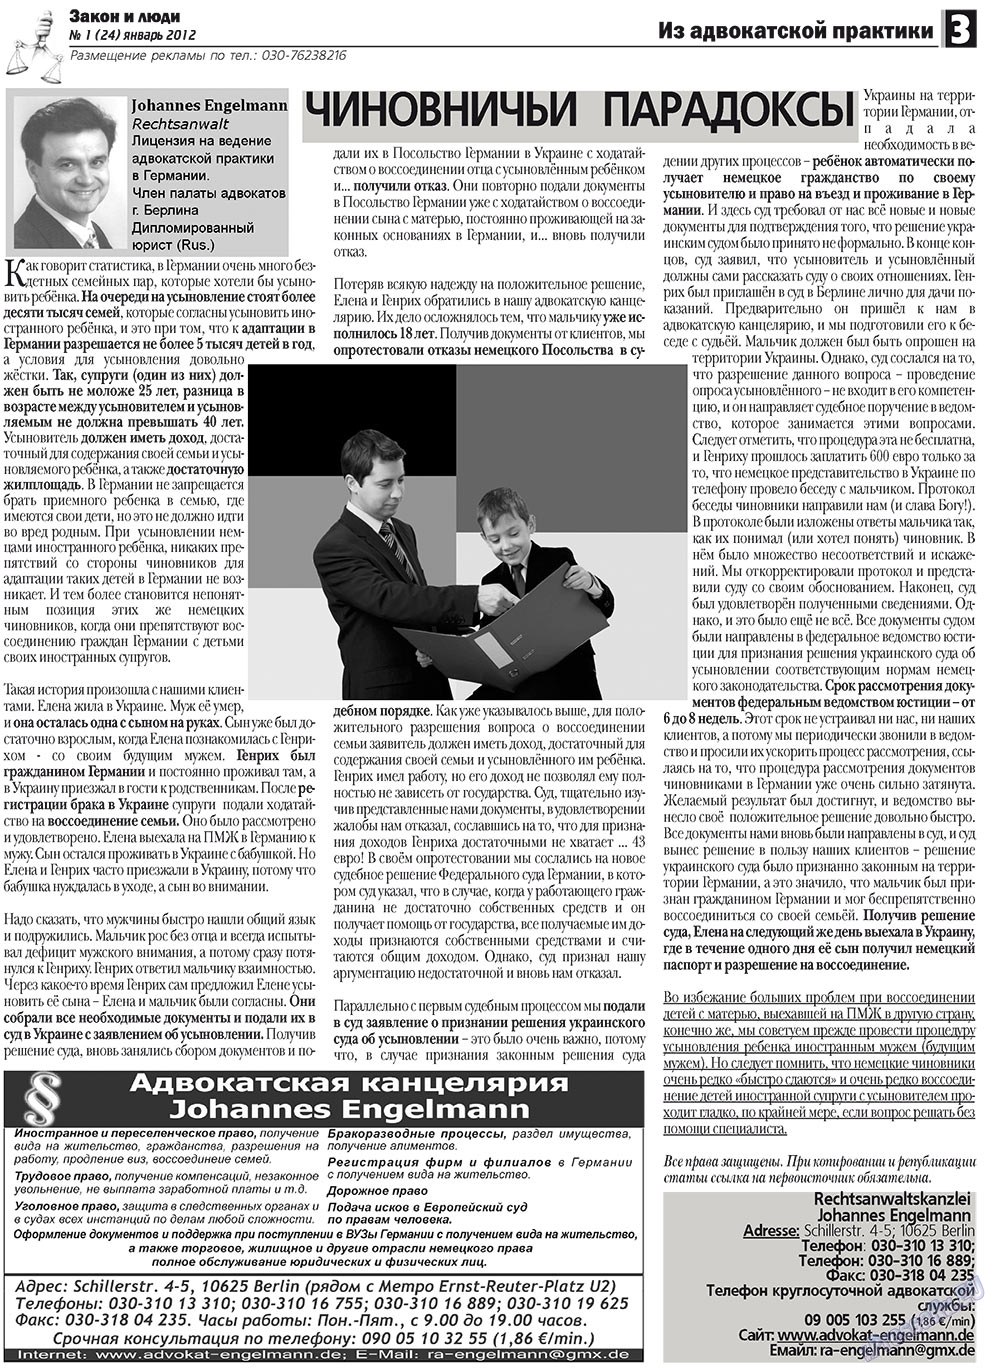 Закон и люди (газета). 2012 год, номер 1, стр. 3